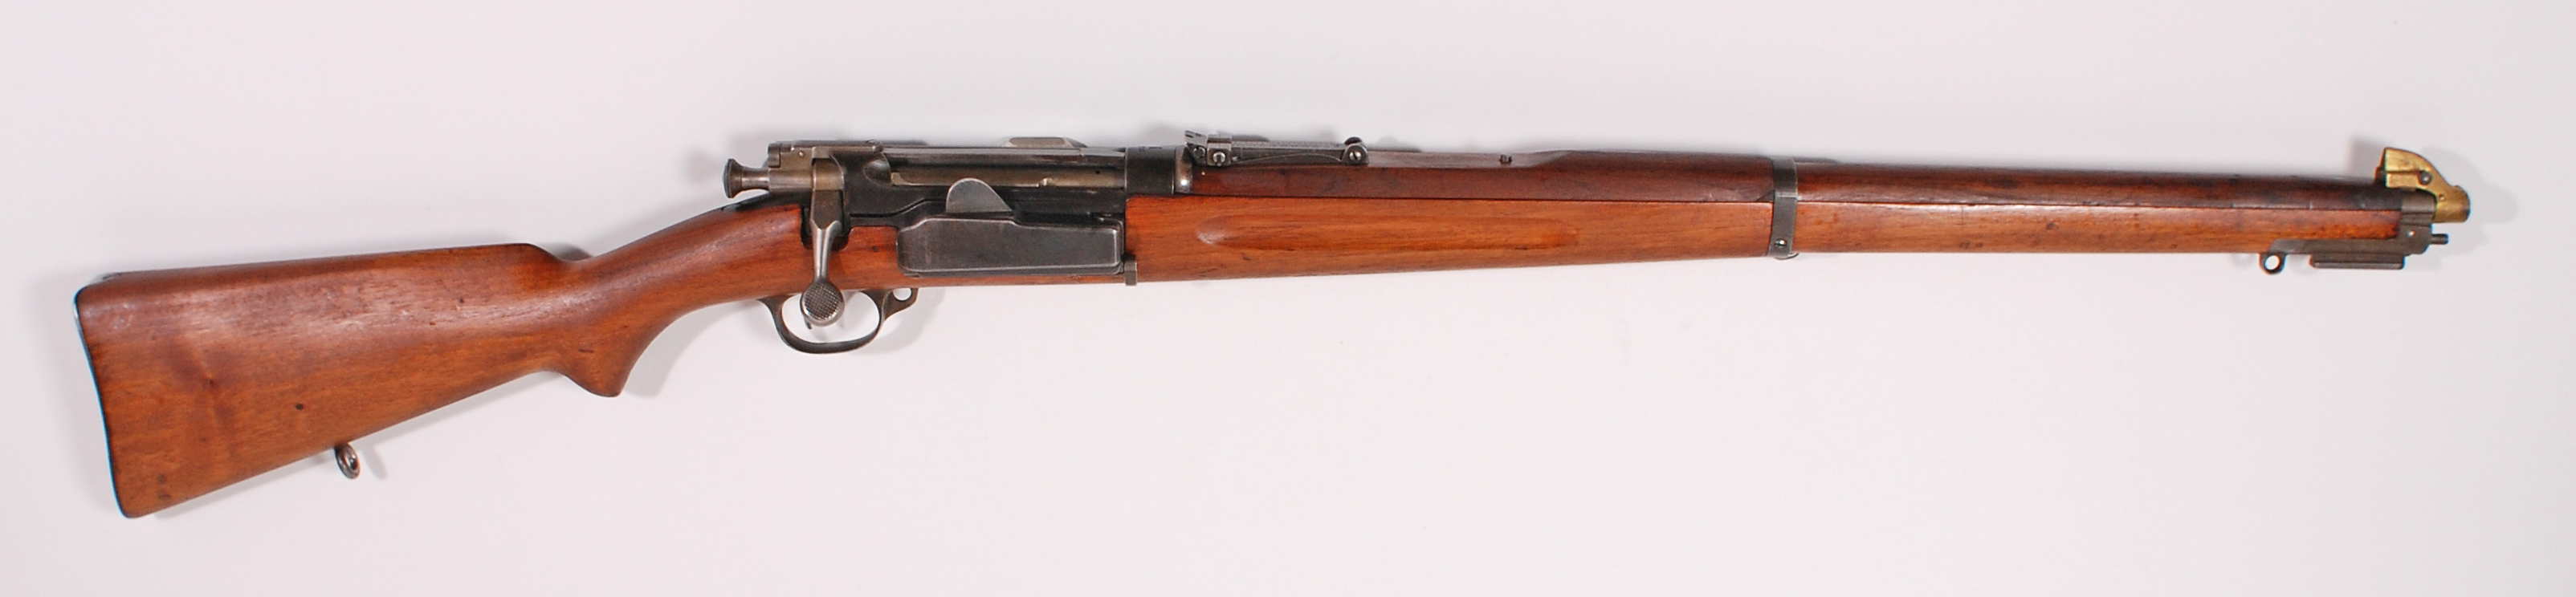 ./guns/rifle/bilder/Rifle-Kongsberg-Krag-M1912-10438-1.jpg